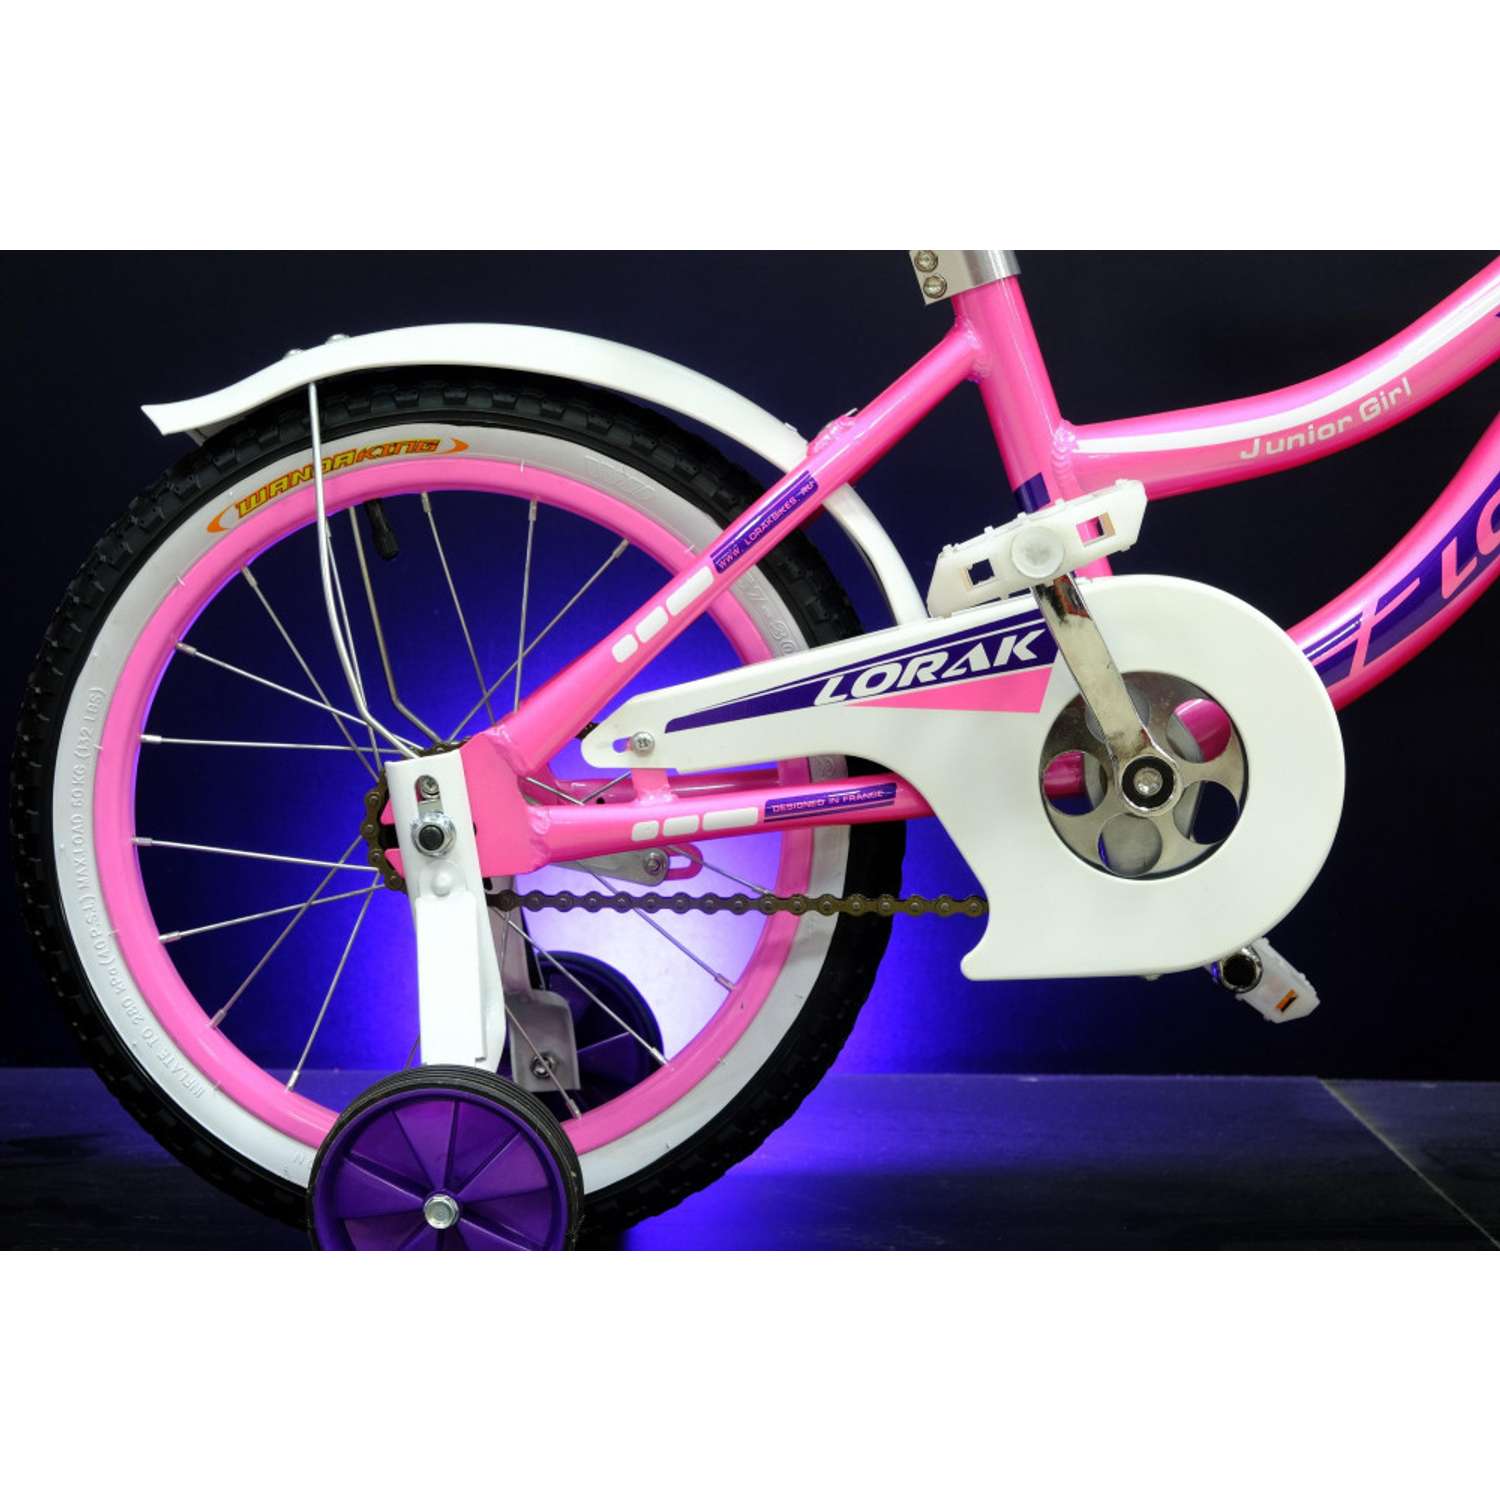 Велосипед детский Lorak junior 16 girl розовый/фиолетовый - фото 2